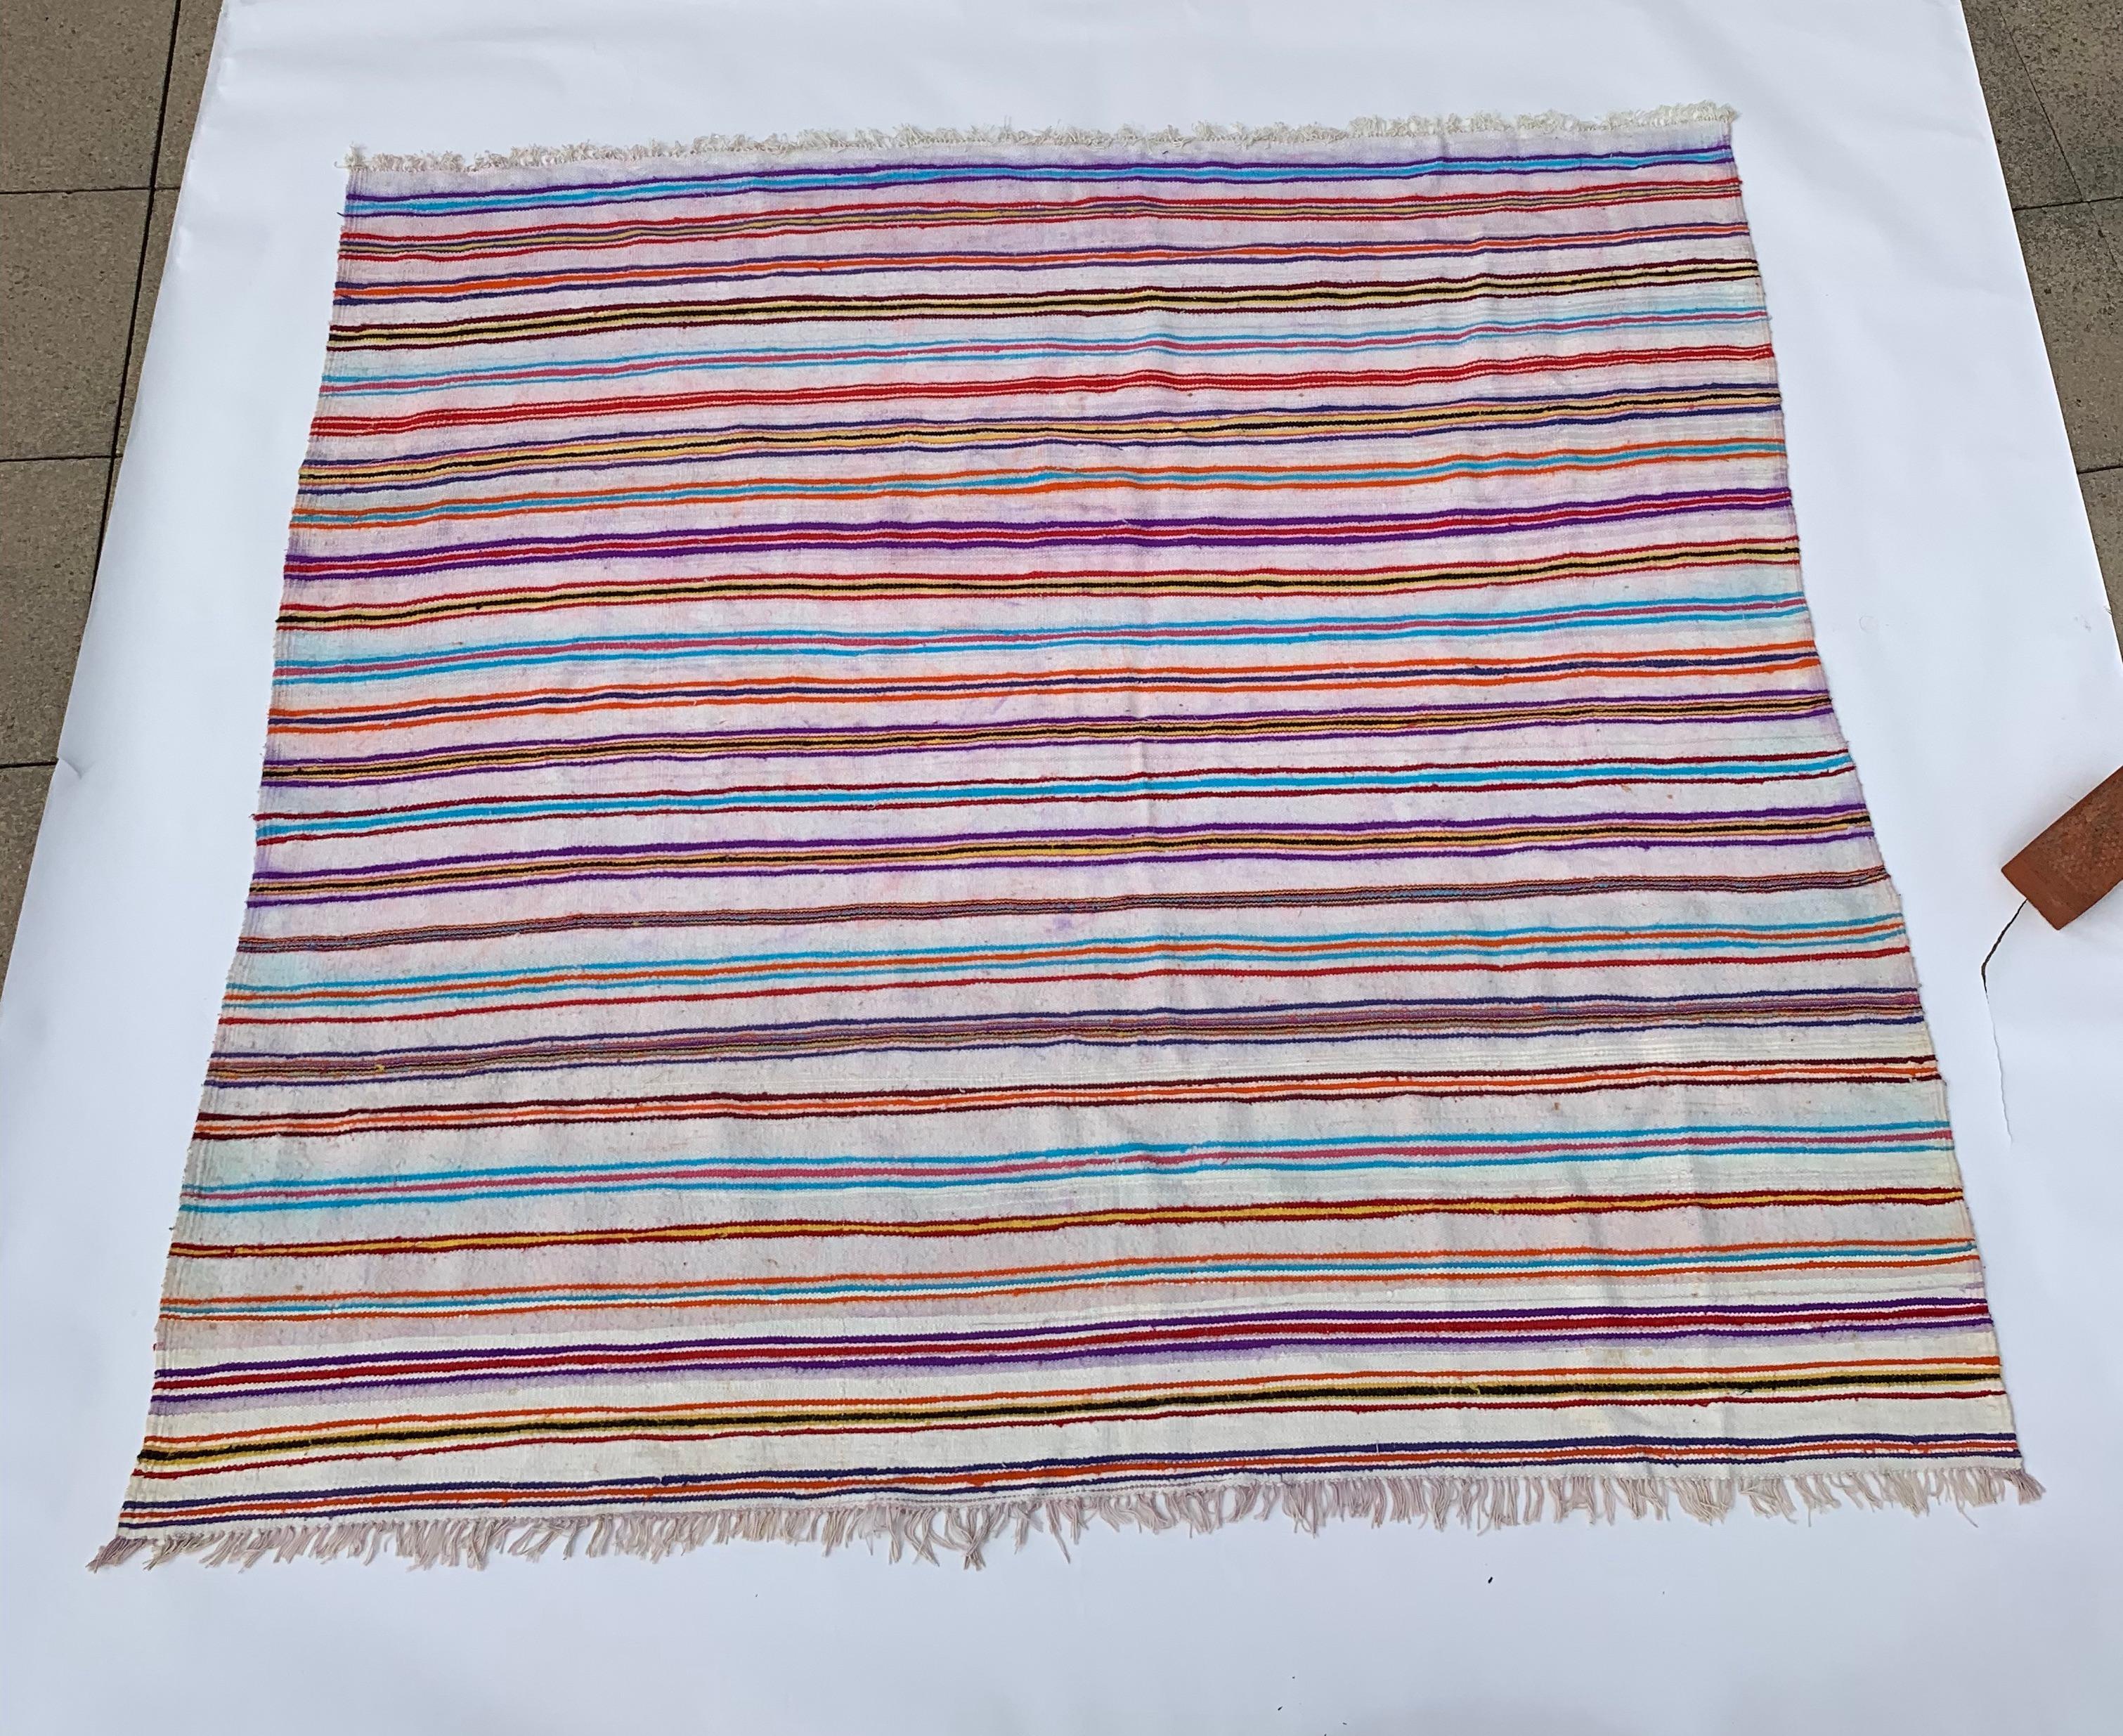 Dieser Berberteppich im Vintage-Stil aus Nordalgerien zeichnet sich durch ein Streifendesign aus, bei dem bunte Streifen in Gruppen auf einem beigen Untergrund angeordnet sind. Mit den Farben Rot, Blau und Violett schafft der Teppich visuelles